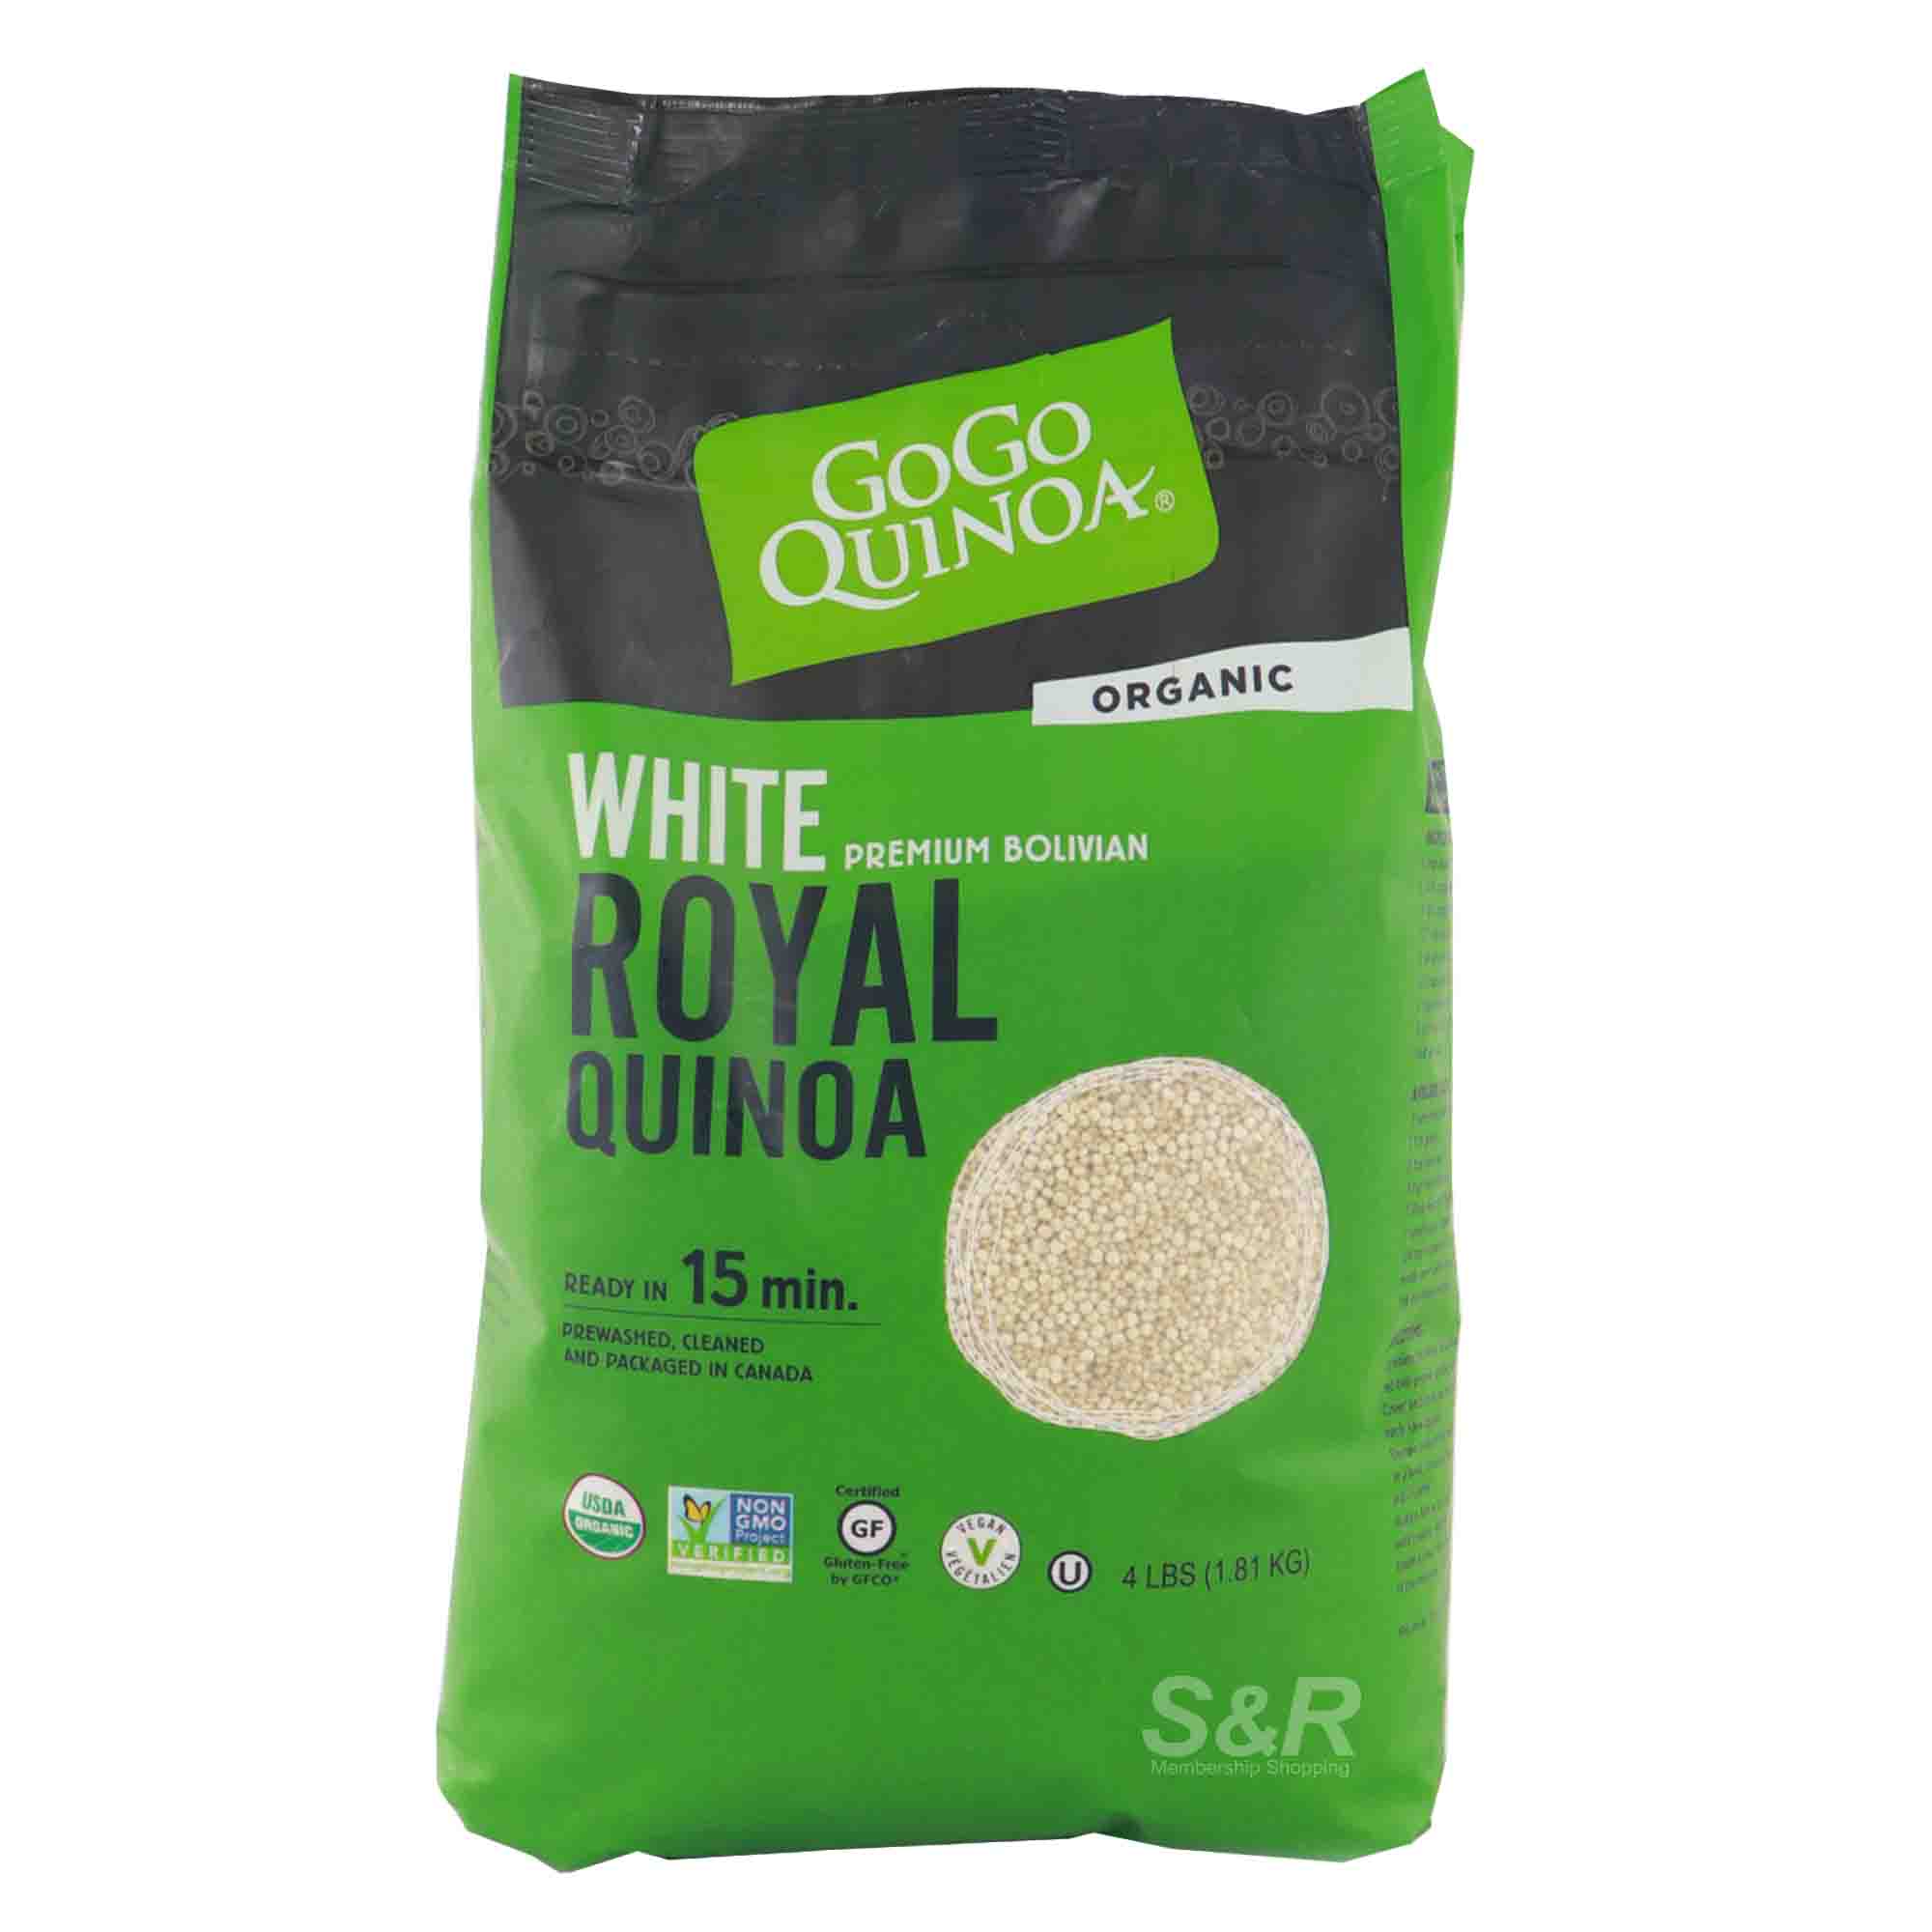 GoGo Quinoa Organic White Premium Bolivian Royal Quinoa 1.81kg